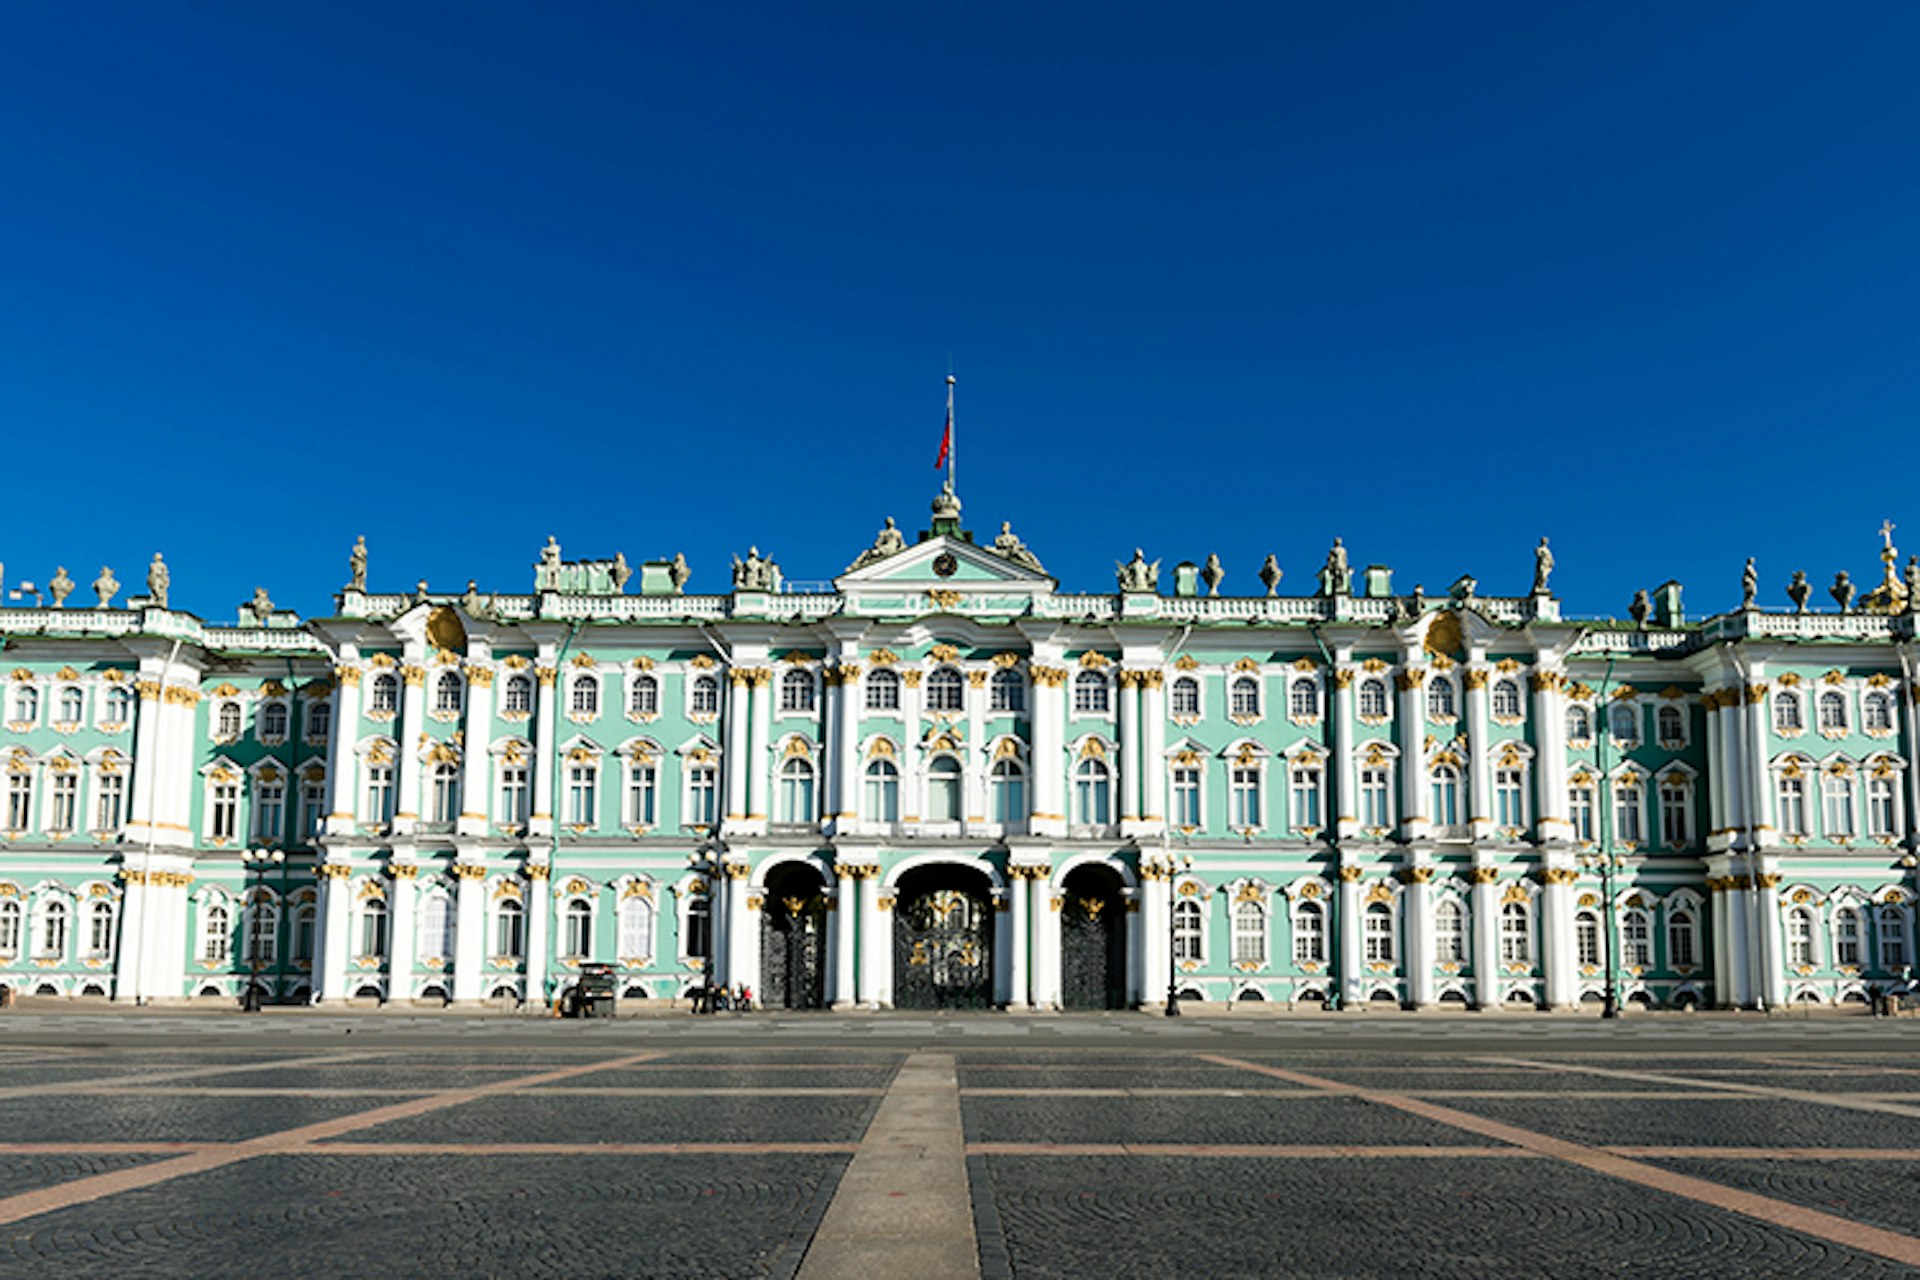 Saint Petersburg's Hermitage